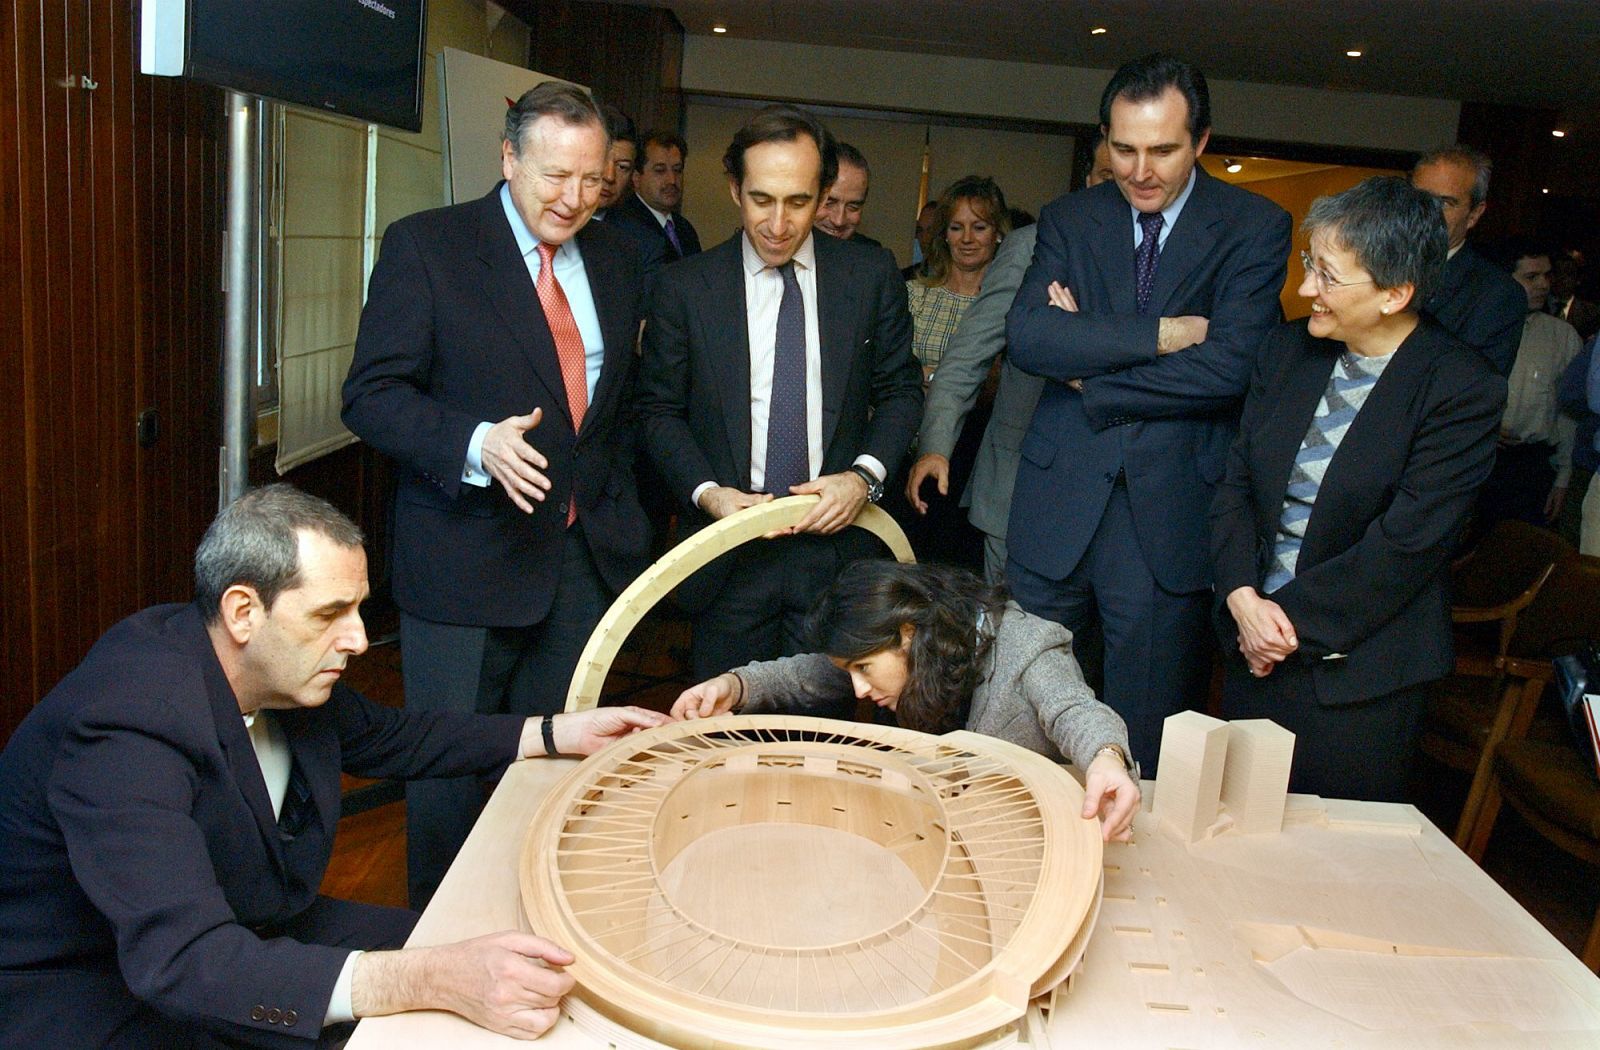 Presentación de la maqueta de la remodelación de la Peineta como estadio olímpico (2003)